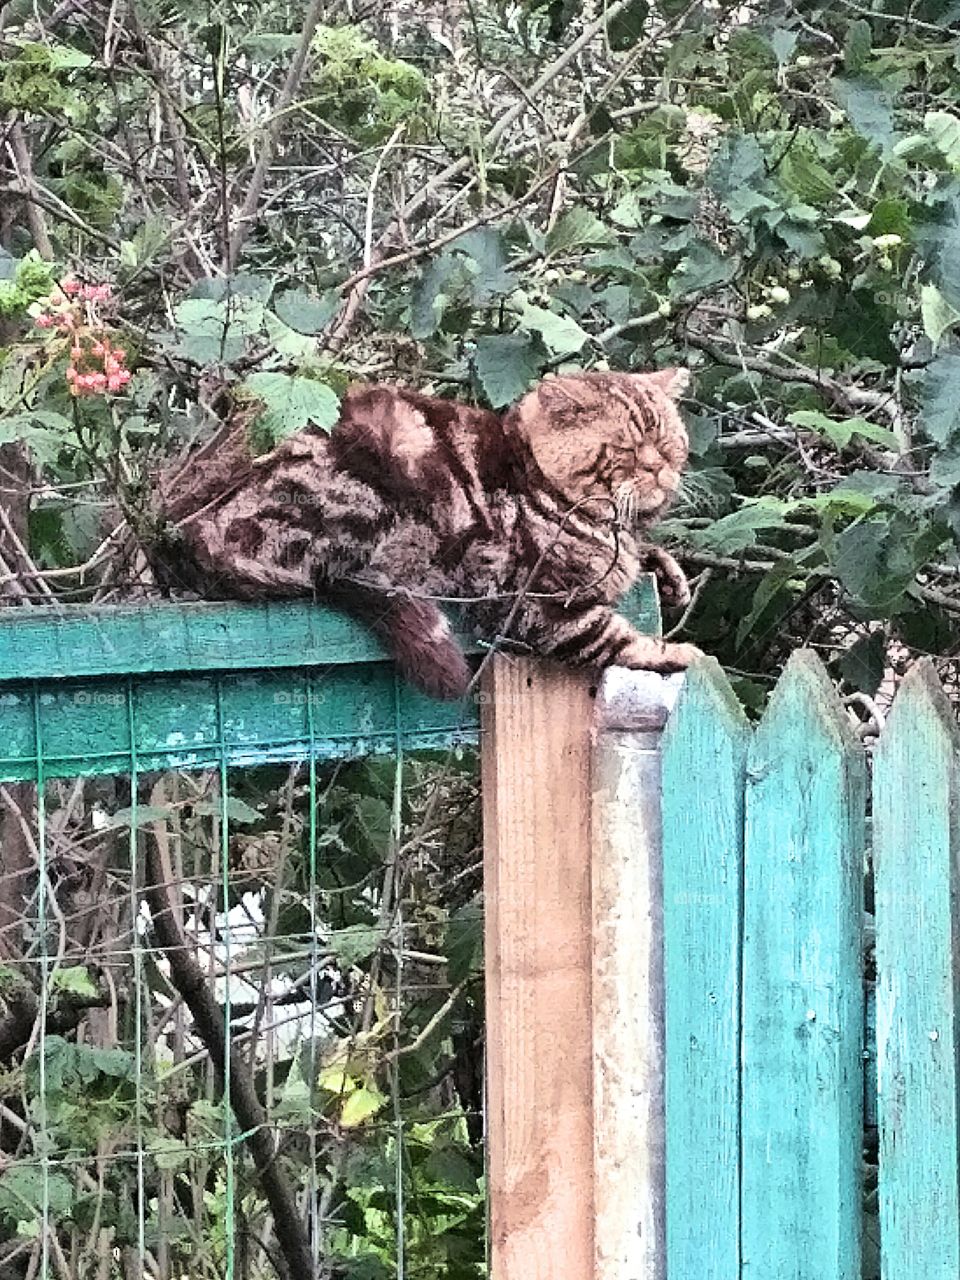 старый кот сидит на заборе.Летний, теплый день, сад, зелень в саду